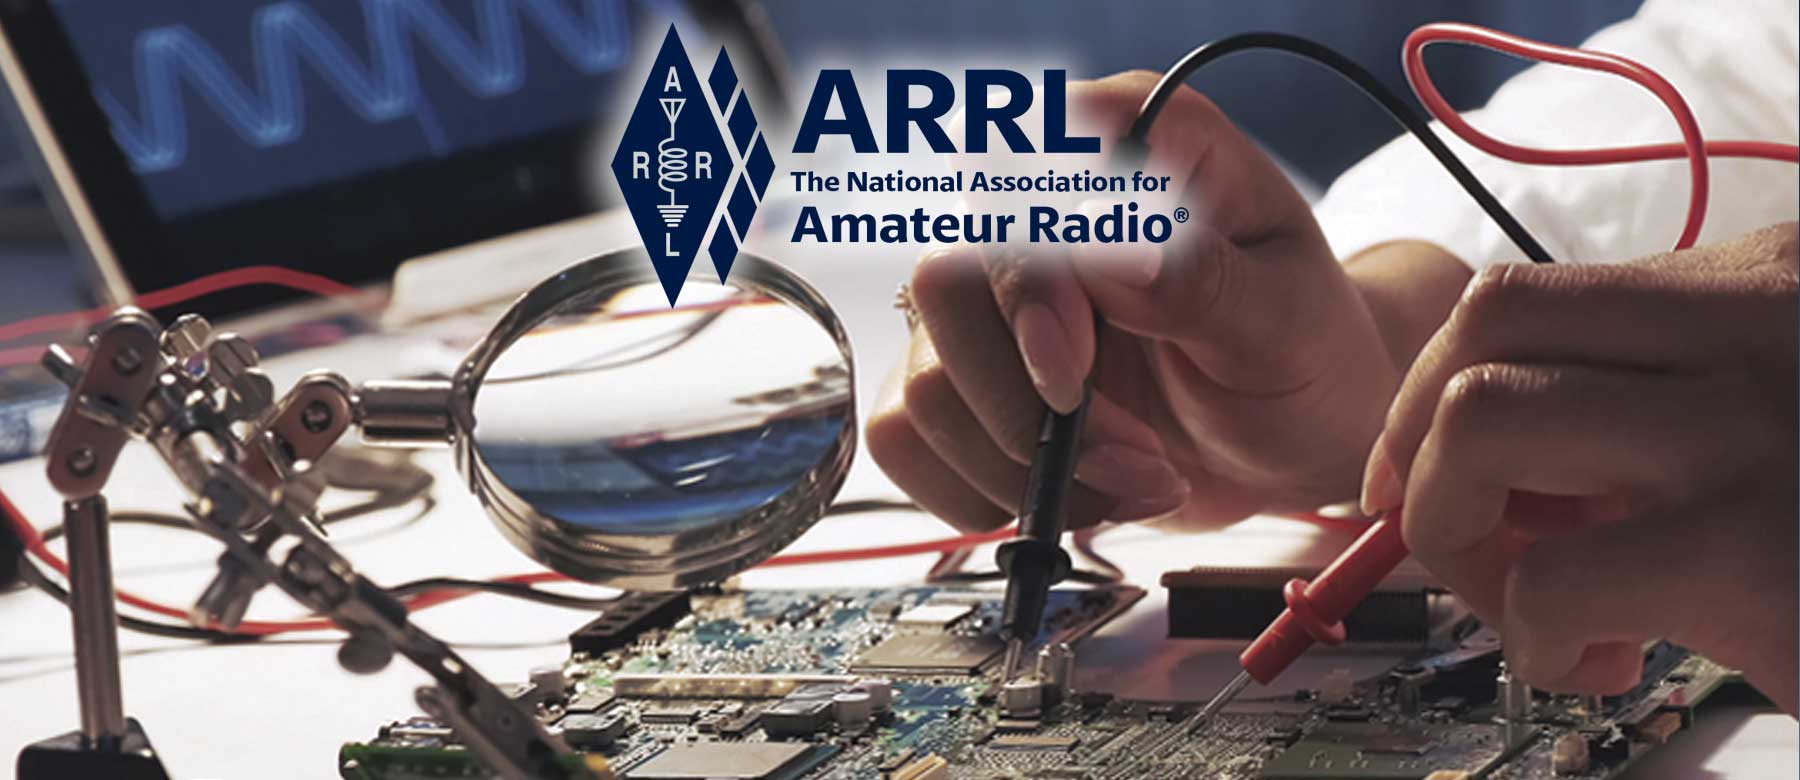 ARRL  The National Association for Amateur Radio®